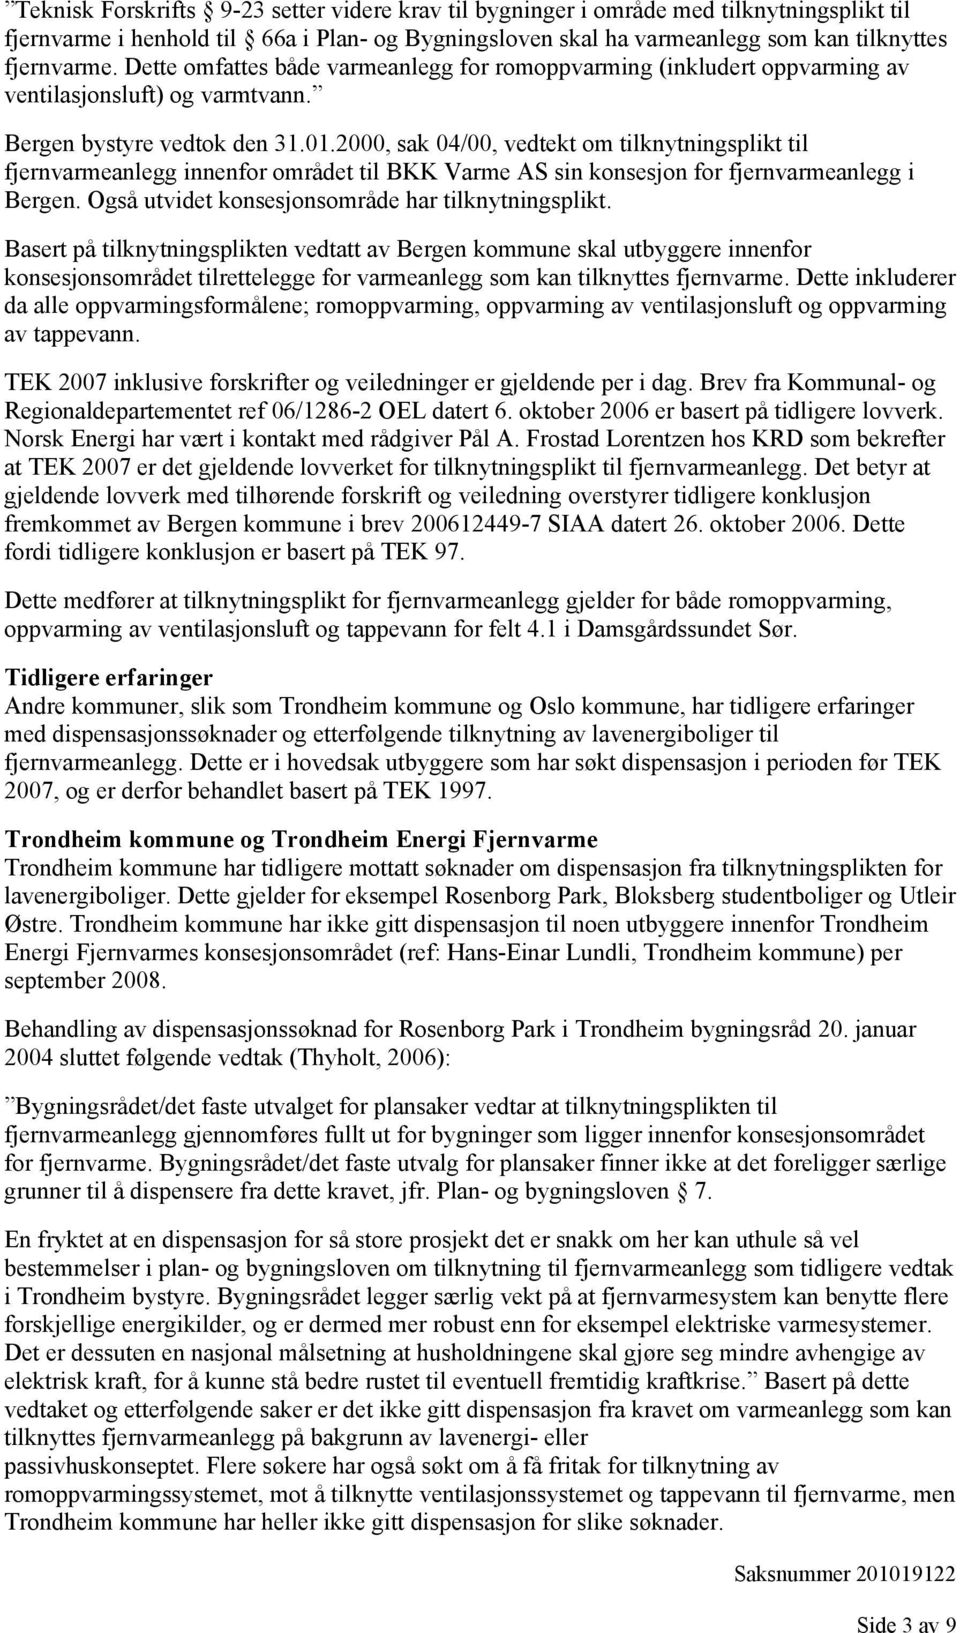 2000, sak 04/00, vedtekt om tilknytningsplikt til fjernvarmeanlegg innenfor området til BKK Varme AS sin konsesjon for fjernvarmeanlegg i Bergen. Også utvidet konsesjonsområde har tilknytningsplikt.